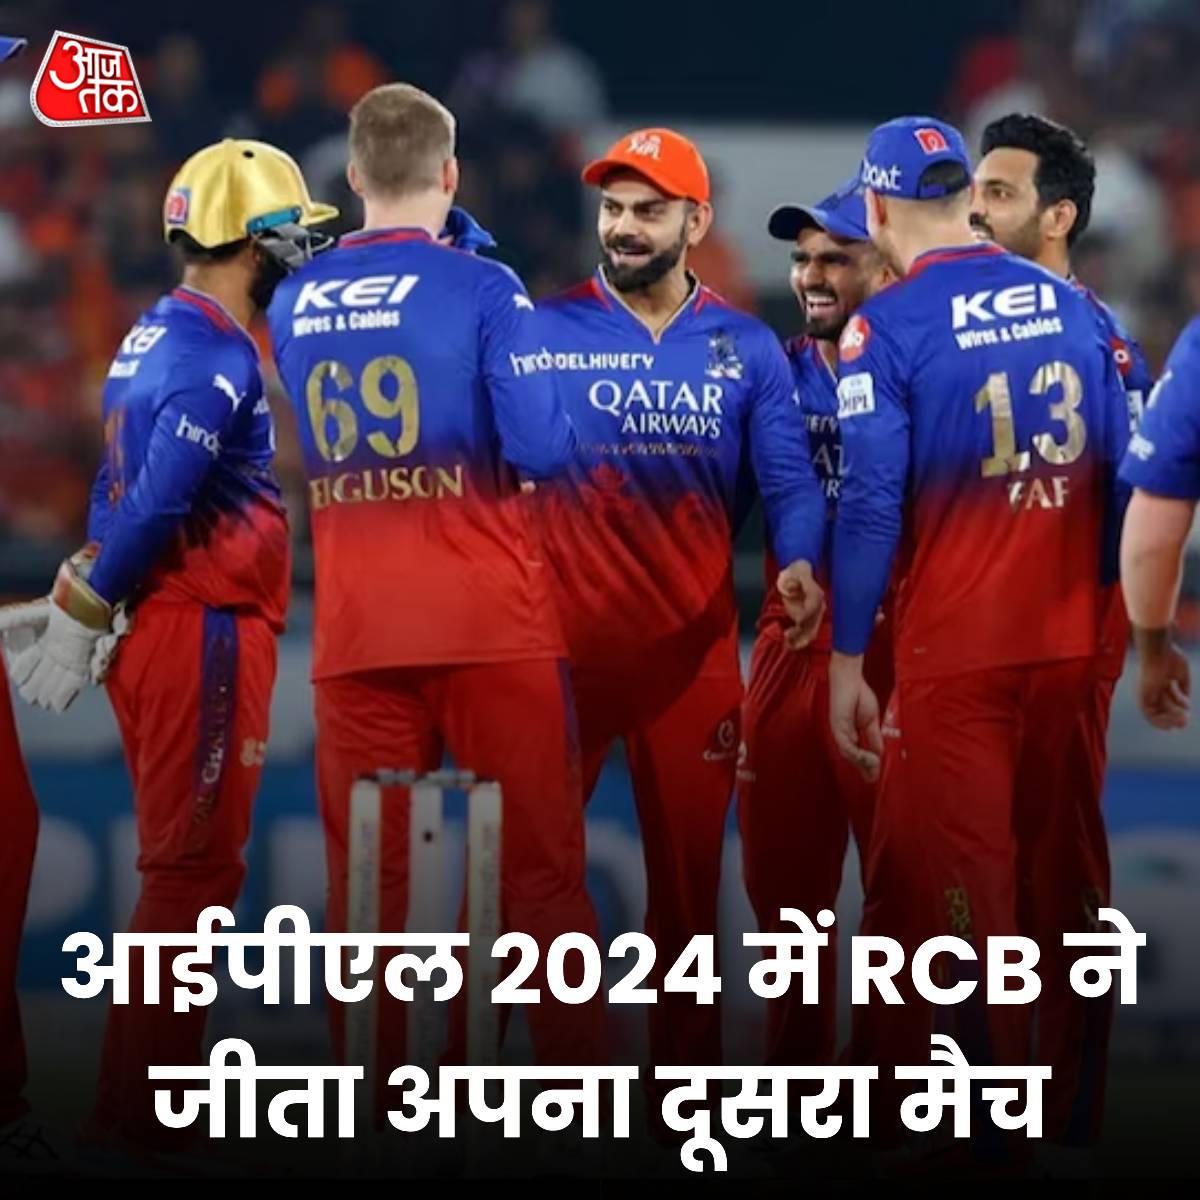 विराट कोहली और रजत पाटीदार के बाद गेंदबाजों का कहर... हैदराबाद टीम हारी, बेंगलुरु जीता फाफ डु प्लेसिस की कप्तानी वाली रॉयल चैलेंजर्स बेंगलुरु (RCB) टीम जीत की पटरी पर लौट आई है. उसने इंडियन प्रीमियर लीग (IPL) 2024 सीजन में लगातार 6 हार के पहली जीत दर्ज की है. गुरुवार (25 अप्रैल)